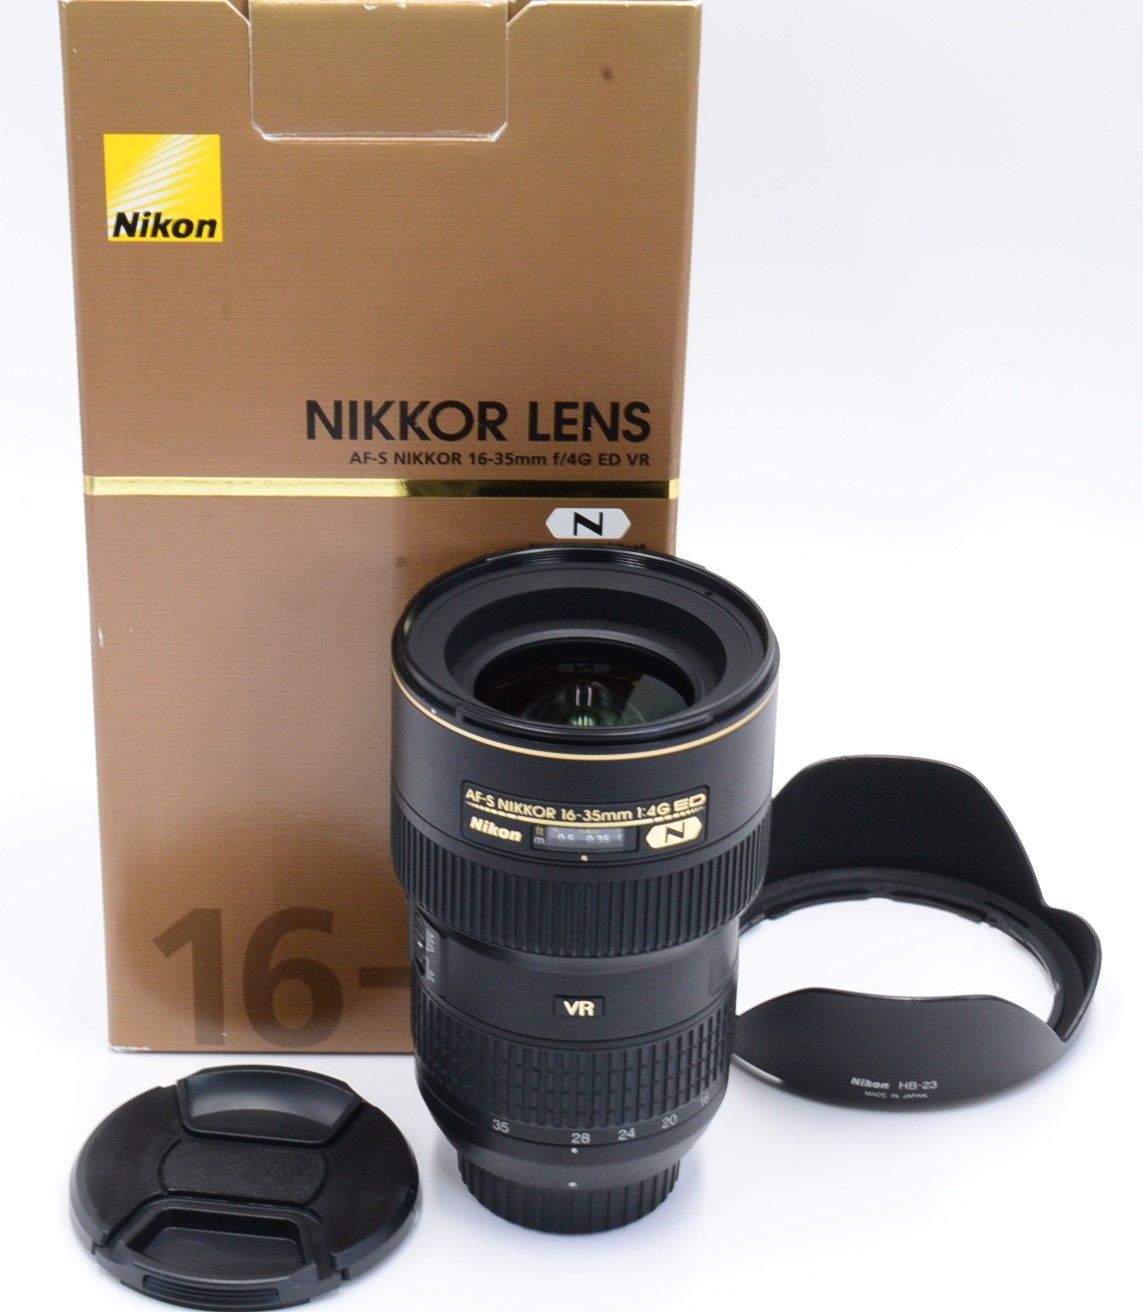 即納-96時間限定 Nikon 広角ズームレンズ AF-S NIKKOR 16-35mm f/4G ED